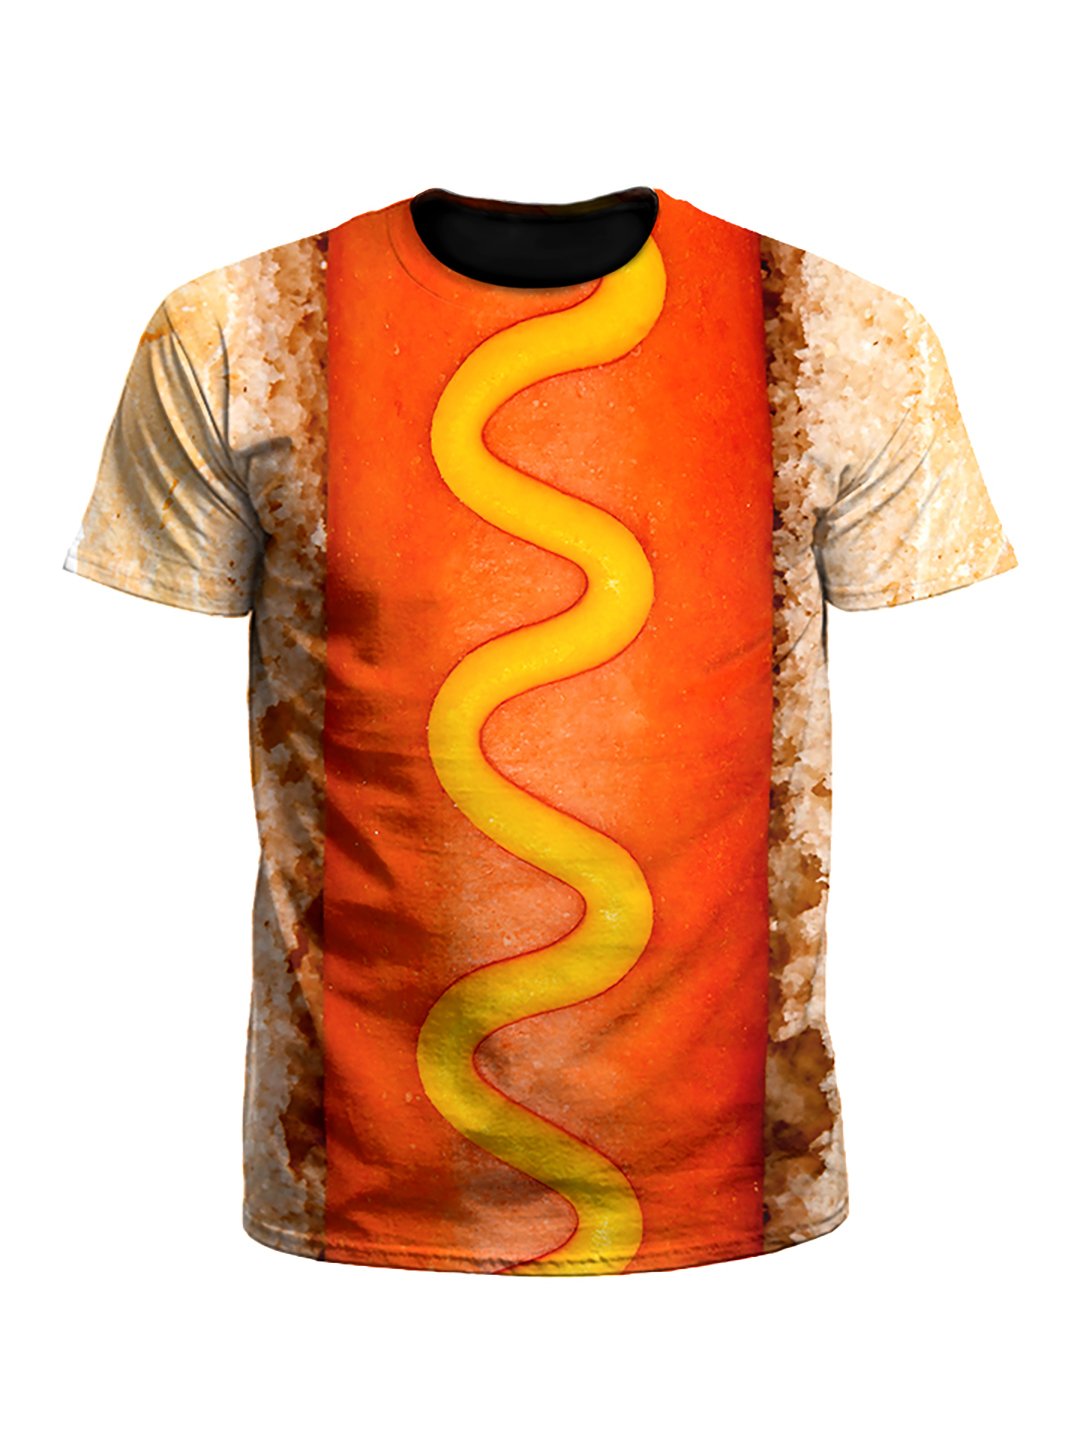 Hot Dog Unisex T-Shirt - Boogie Threads